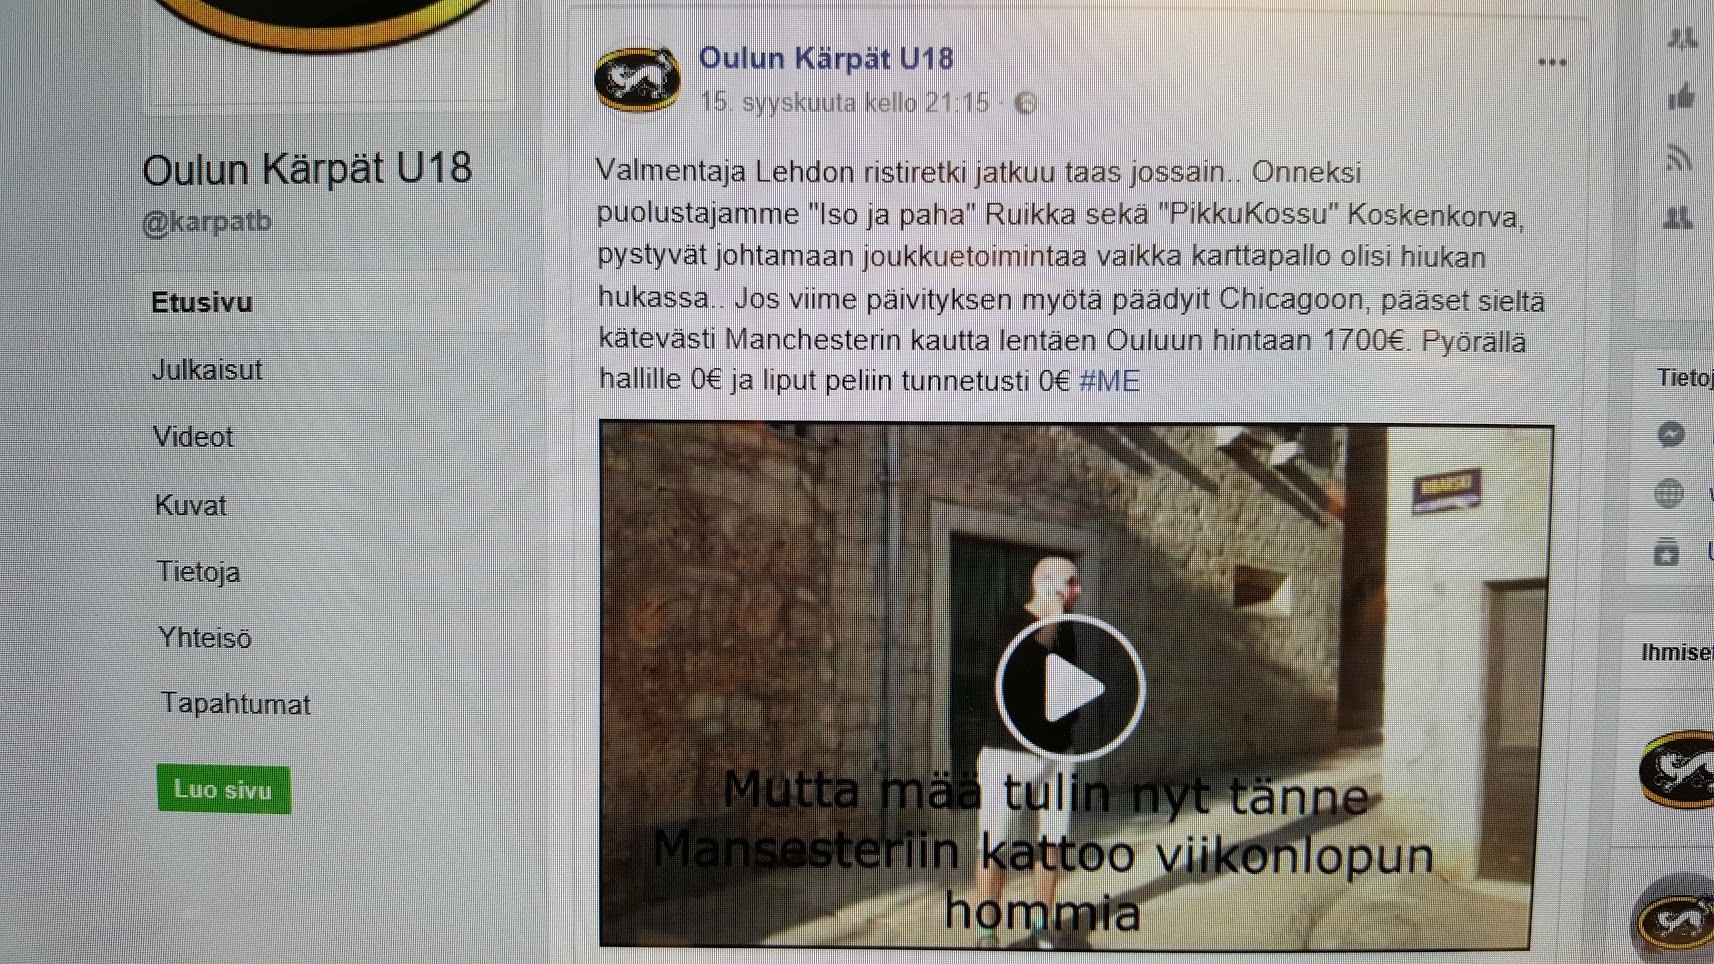 Seuraa Oulun Kärpät U18 joukkuetta facebookissa !